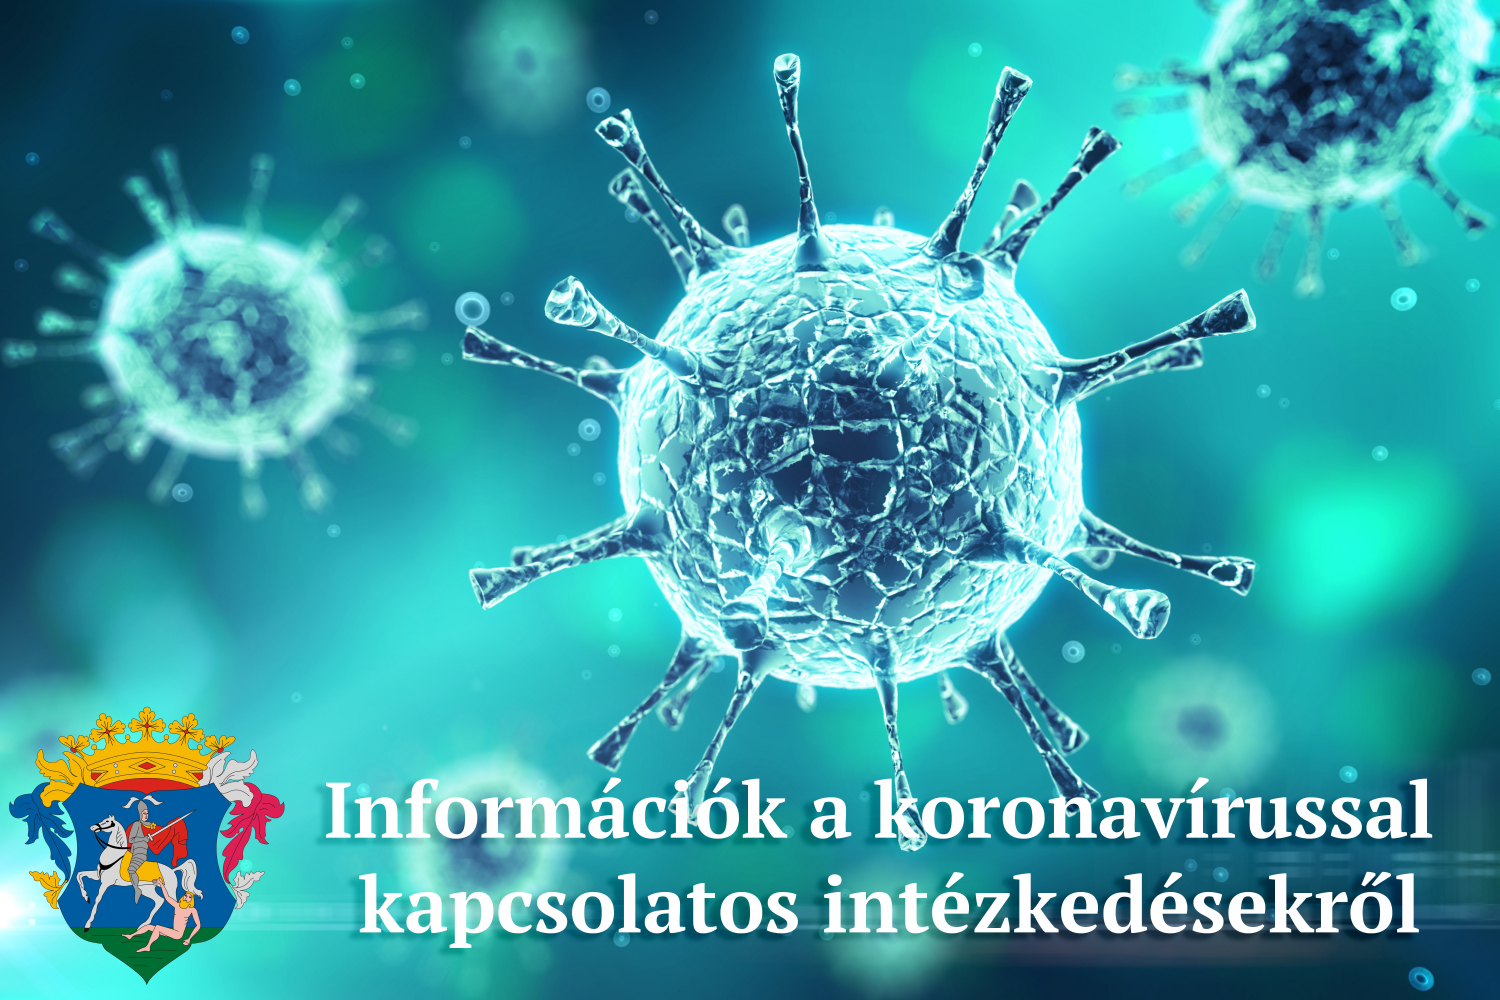 Koronavírussal kapcsolatos intézkedések, döntések 2021. május 7 - 14 között